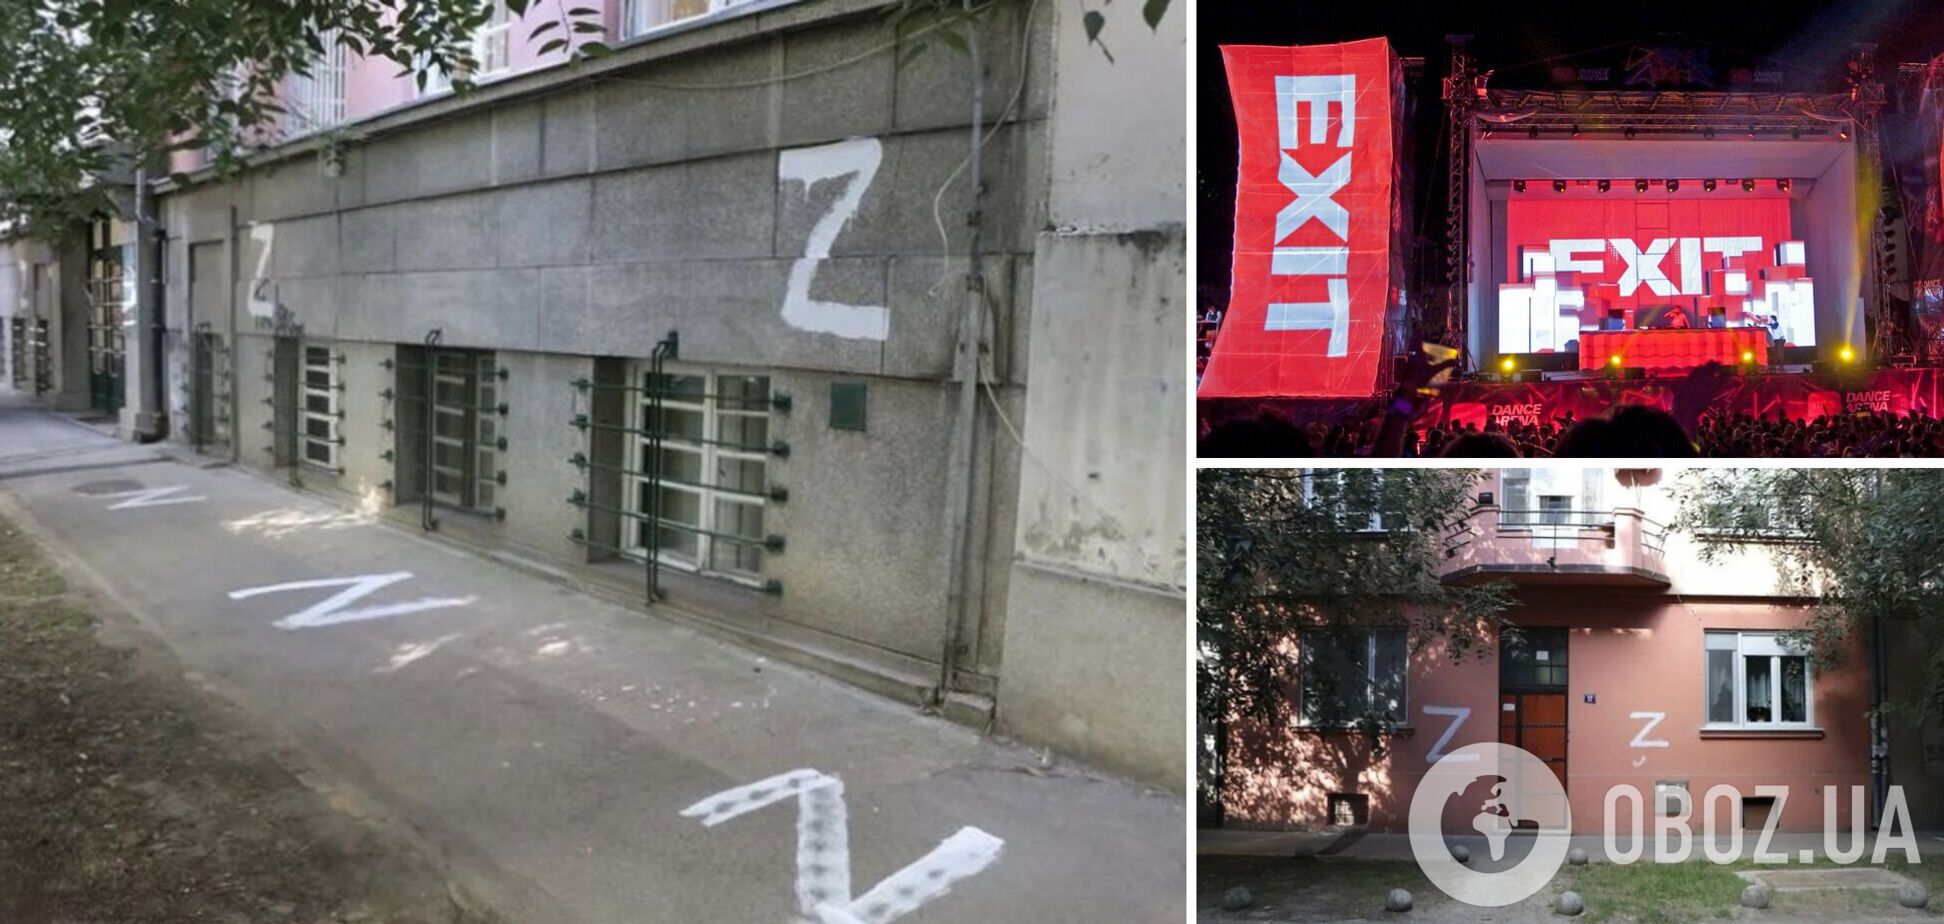 Кілька тисяч написів з літерою Z. У Сербії напередодні міжнародного фестивалю Exit з'явилися символи російської агресії